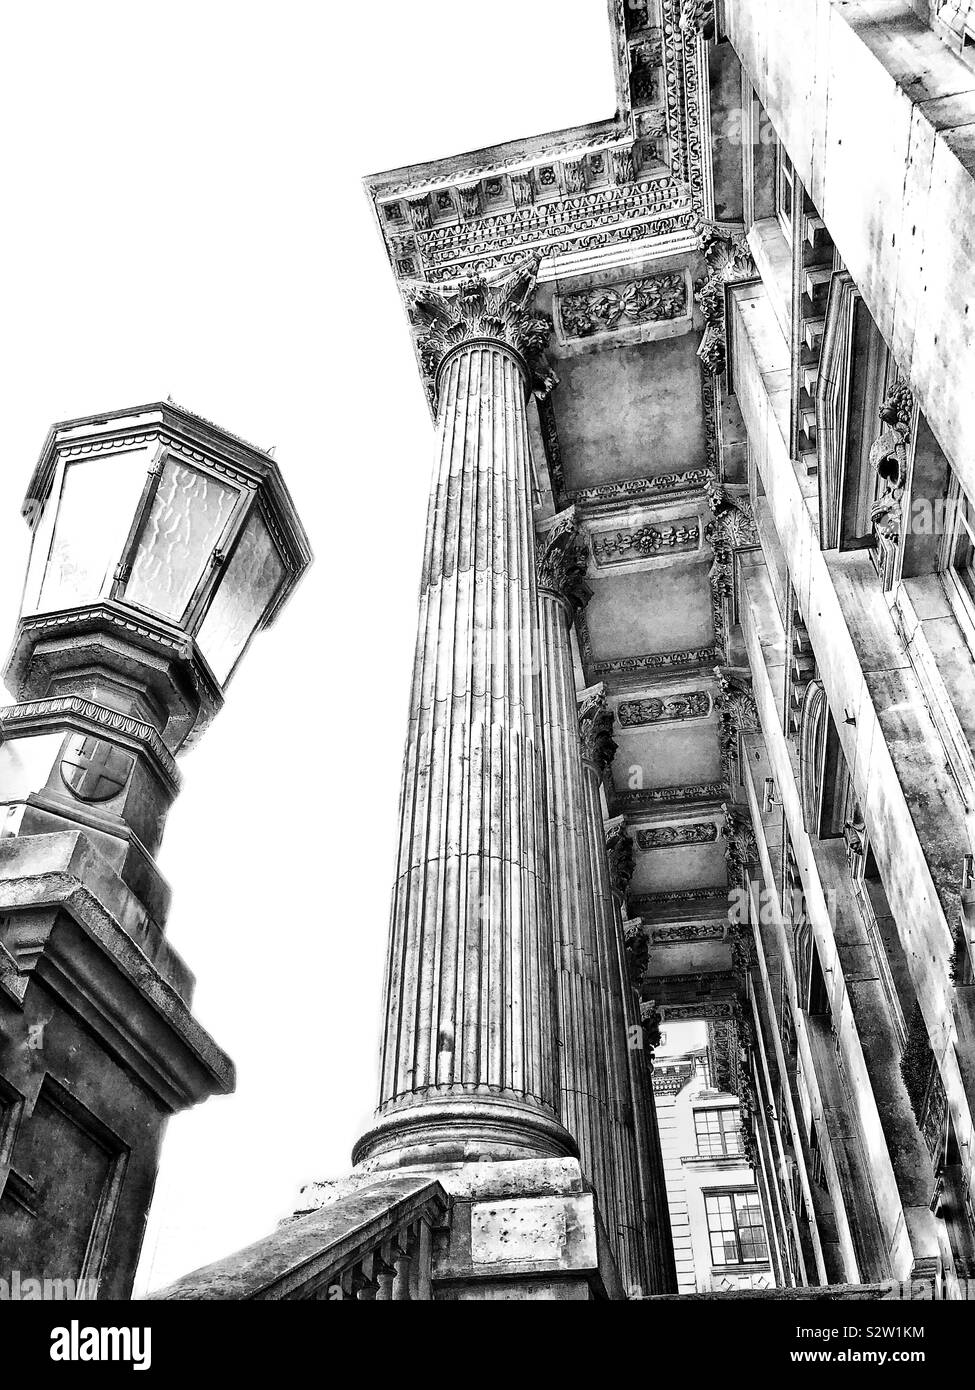 Close up de l'hôtel particulier du xviiie siècle, l'architecture palladienne dans la ville de Londres, en Angleterre. Banque D'Images